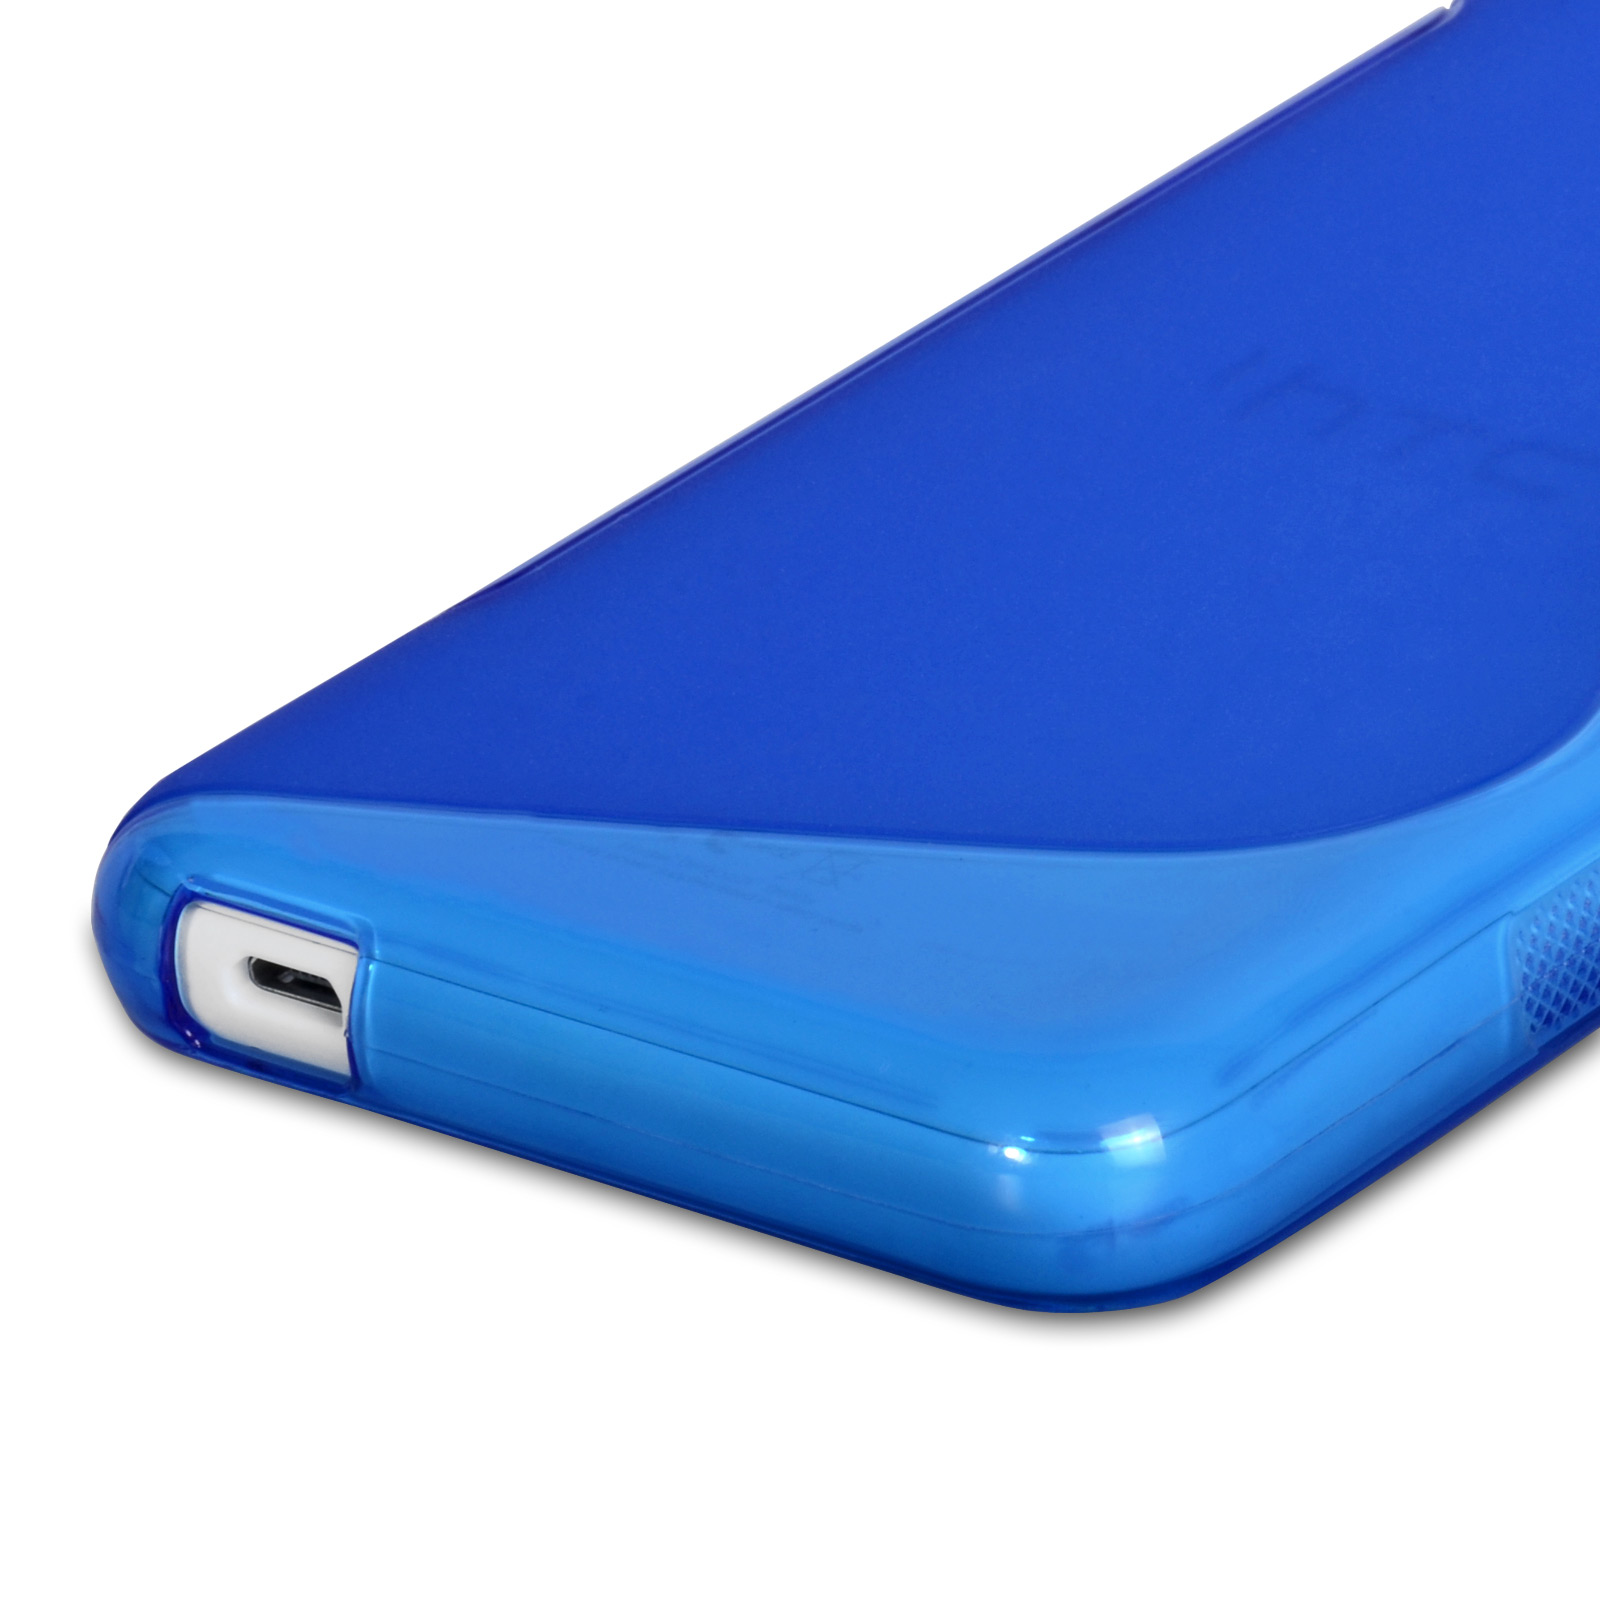 Caseflex HTC Desire 610 Silicone Gel S-Line Case - Blue